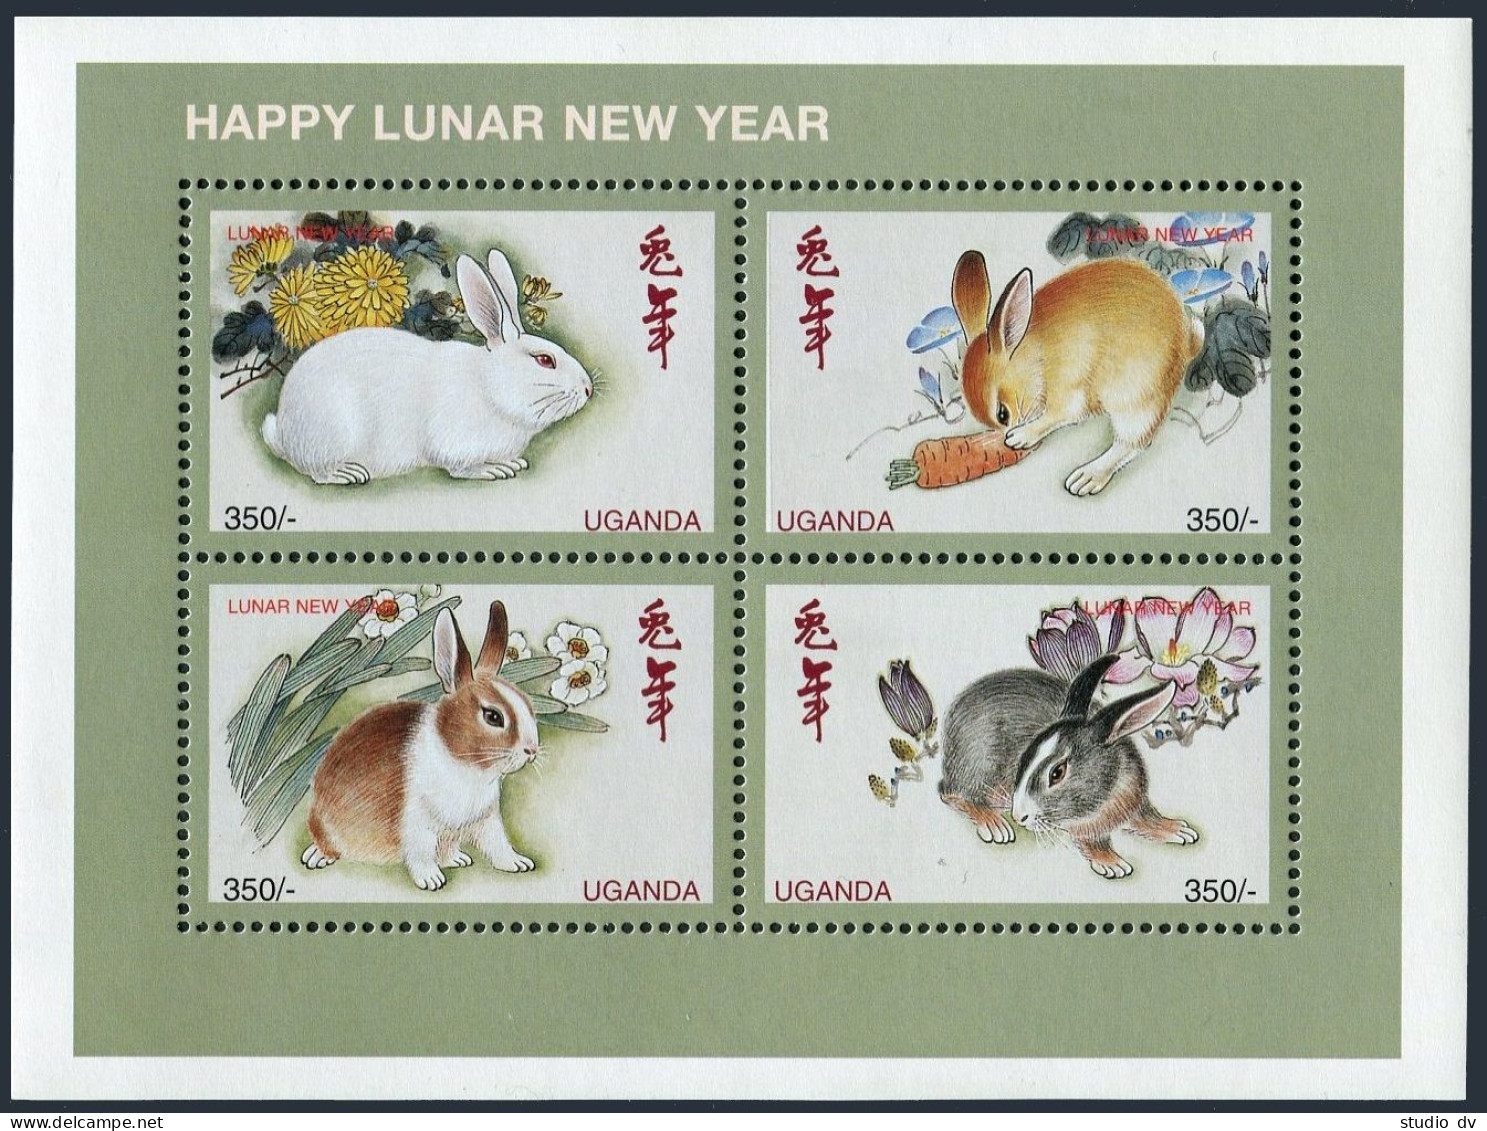 Uganda 1587 Ad,1588 Sheets,MNH. New Year 1999,Lunar New Year Of The Rabbit. - Uganda (1962-...)